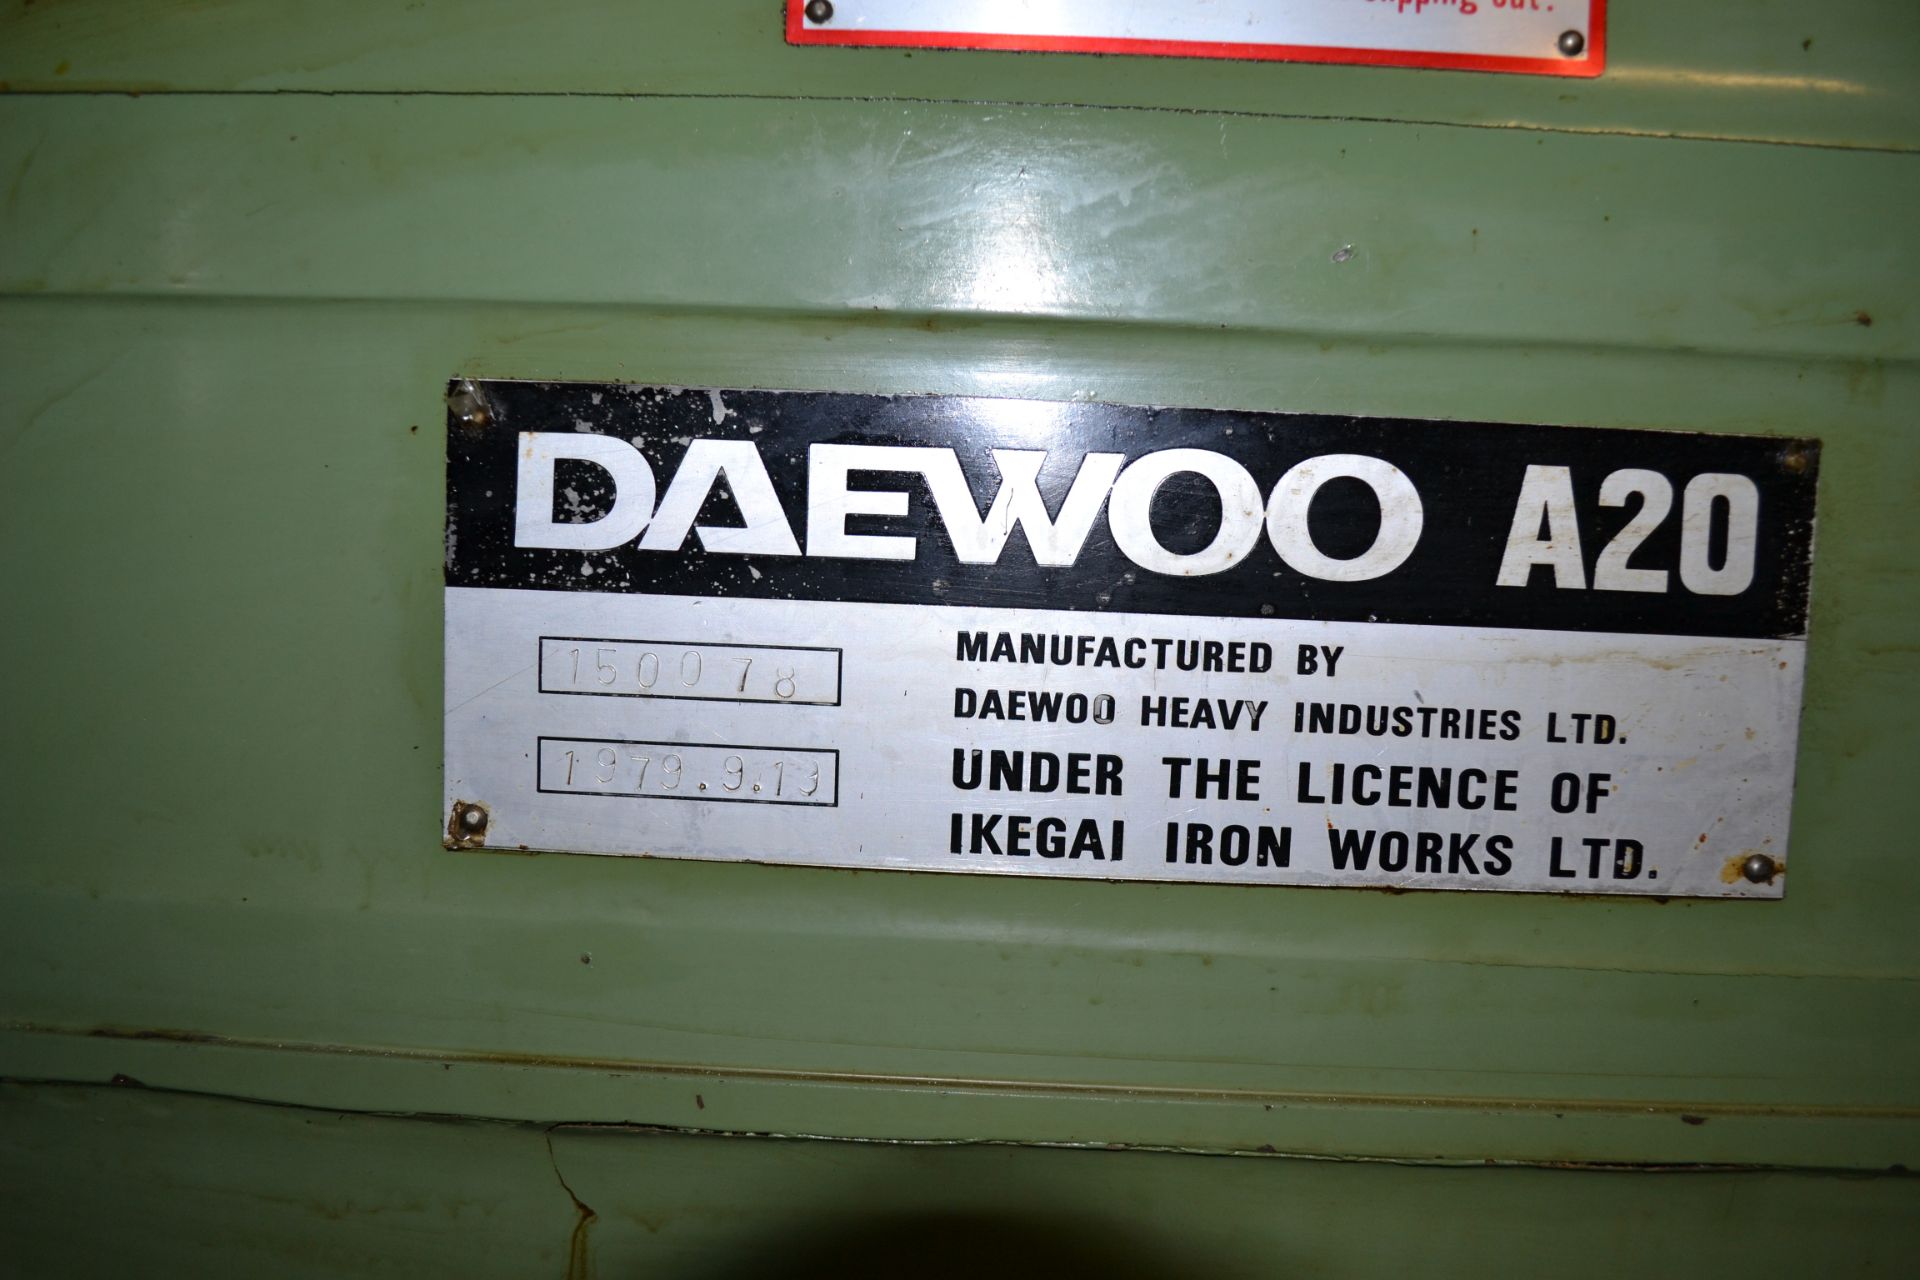 Daewoo Model A20 Engine Lathe - Image 5 of 8